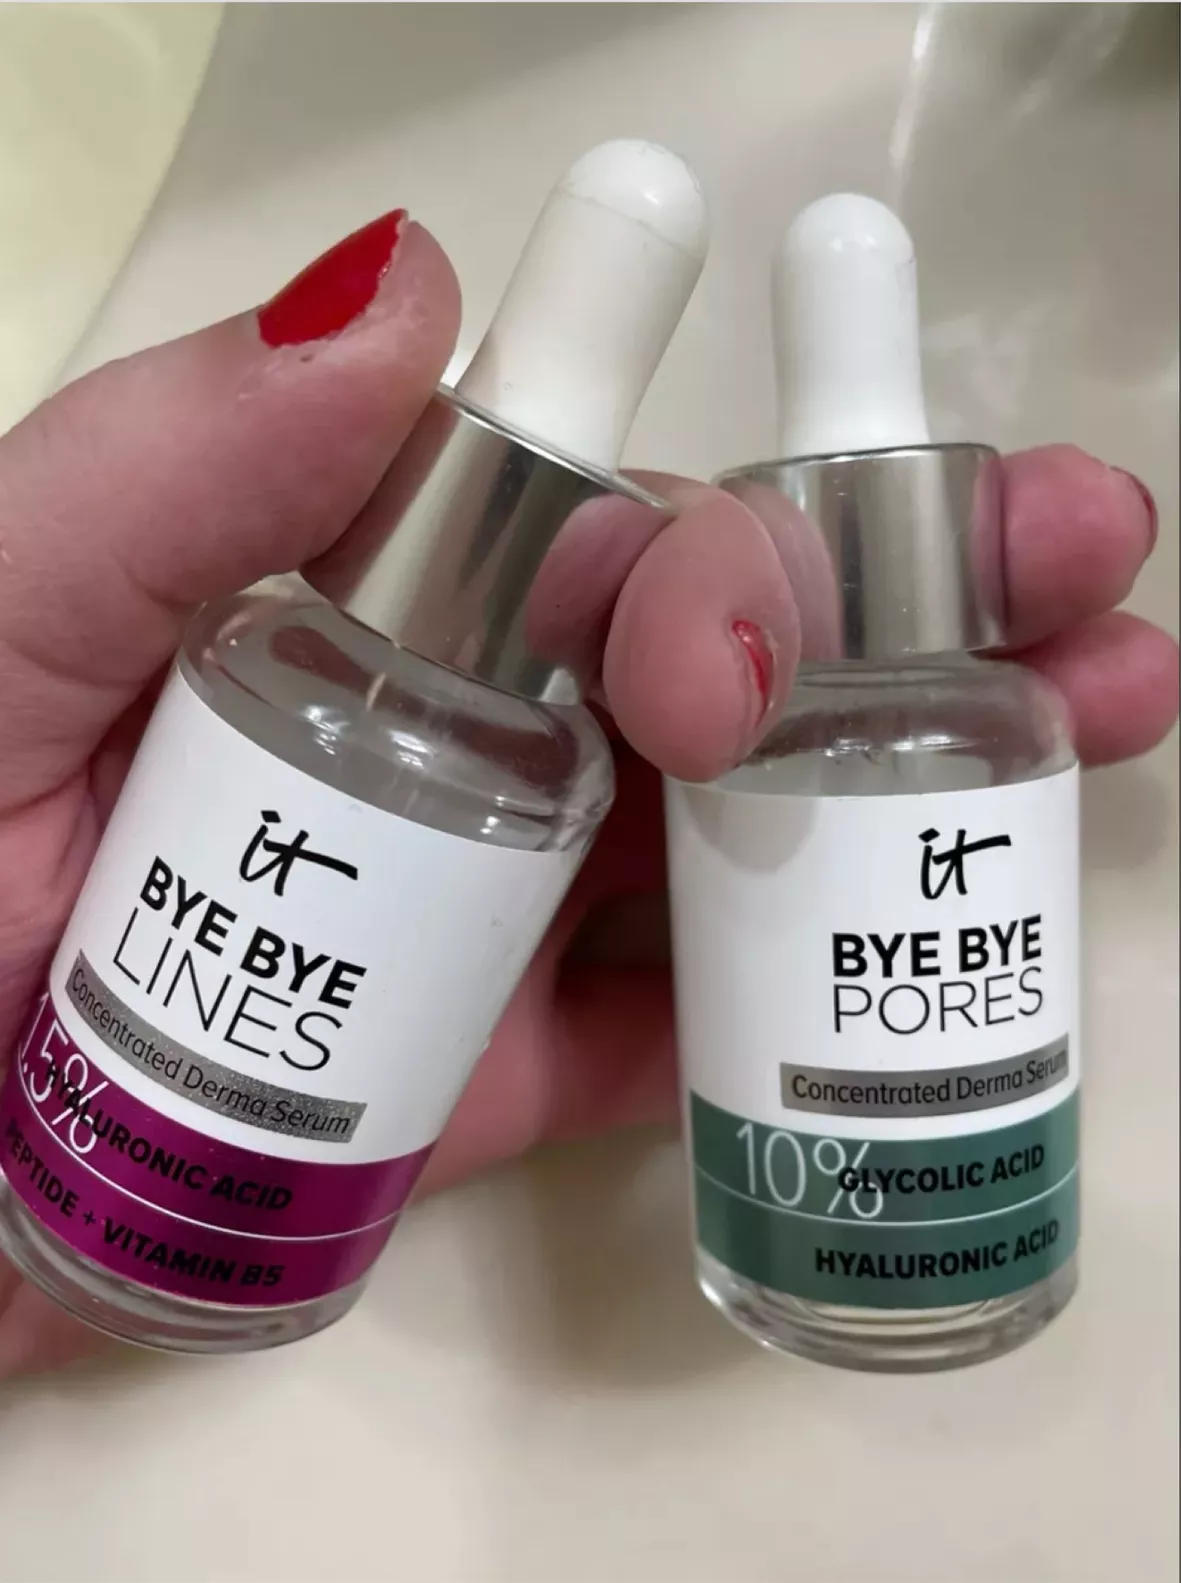 Bye Bye Dark Spots Niacinamide Serum - IT Cosmetics